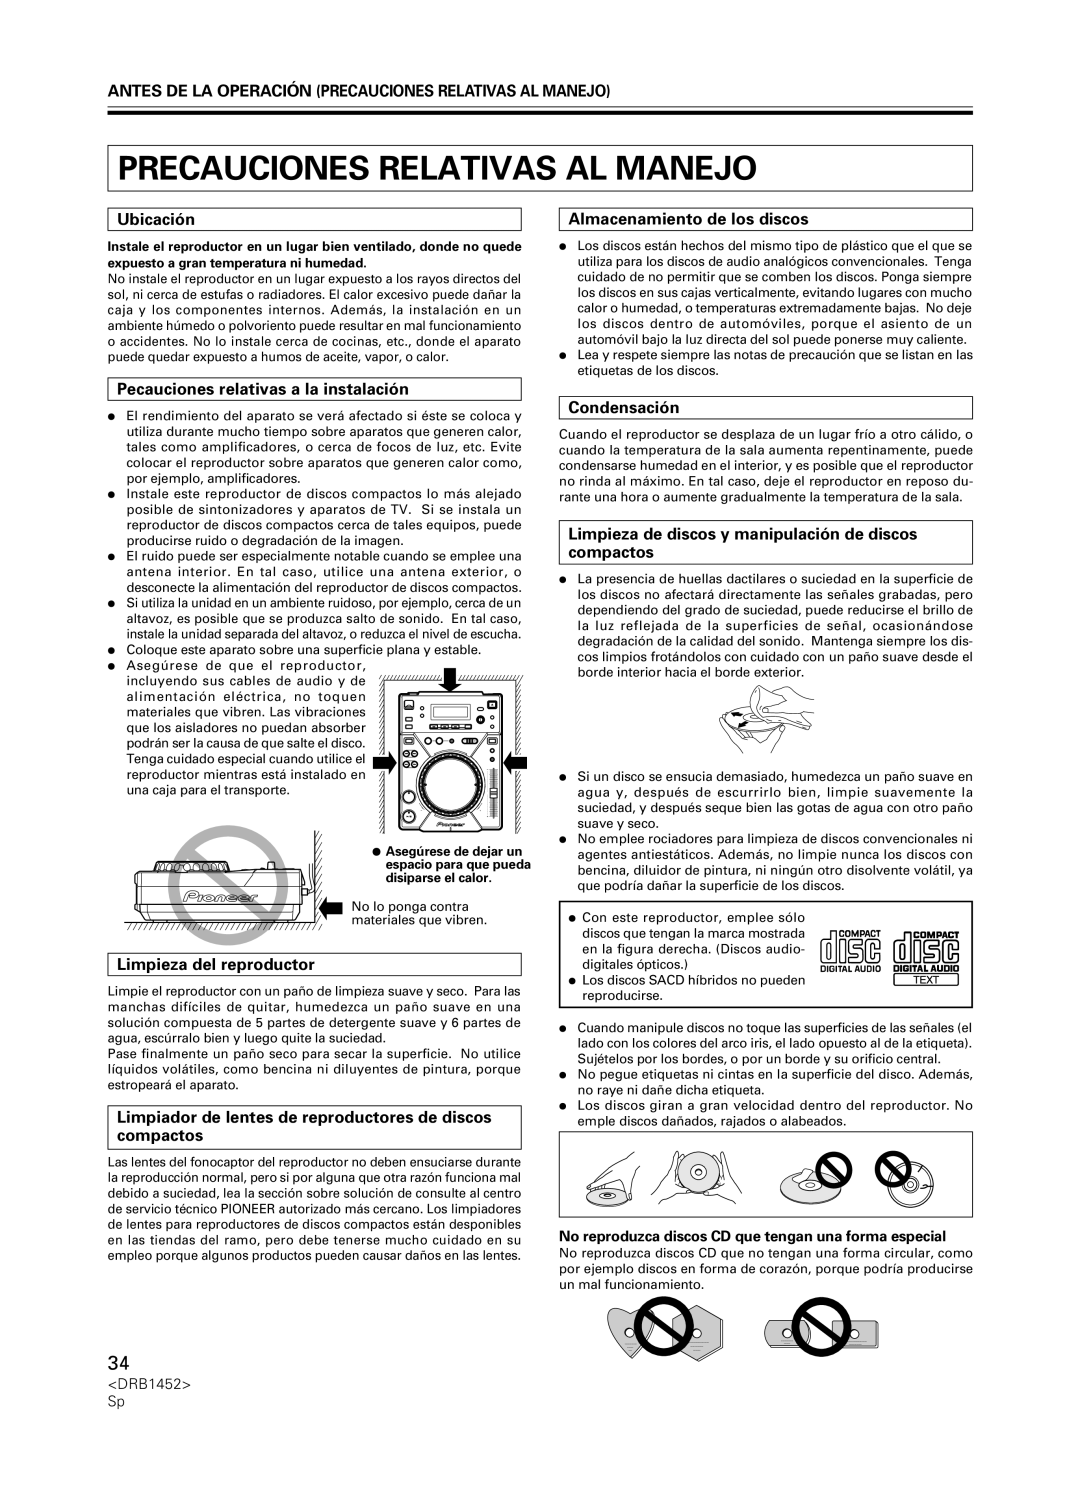 Pioneer CDJ-400 manual Precauciones Relativas Al Manejo, Ubicación, Almacenamiento de los discos, Limpieza del reproductor 